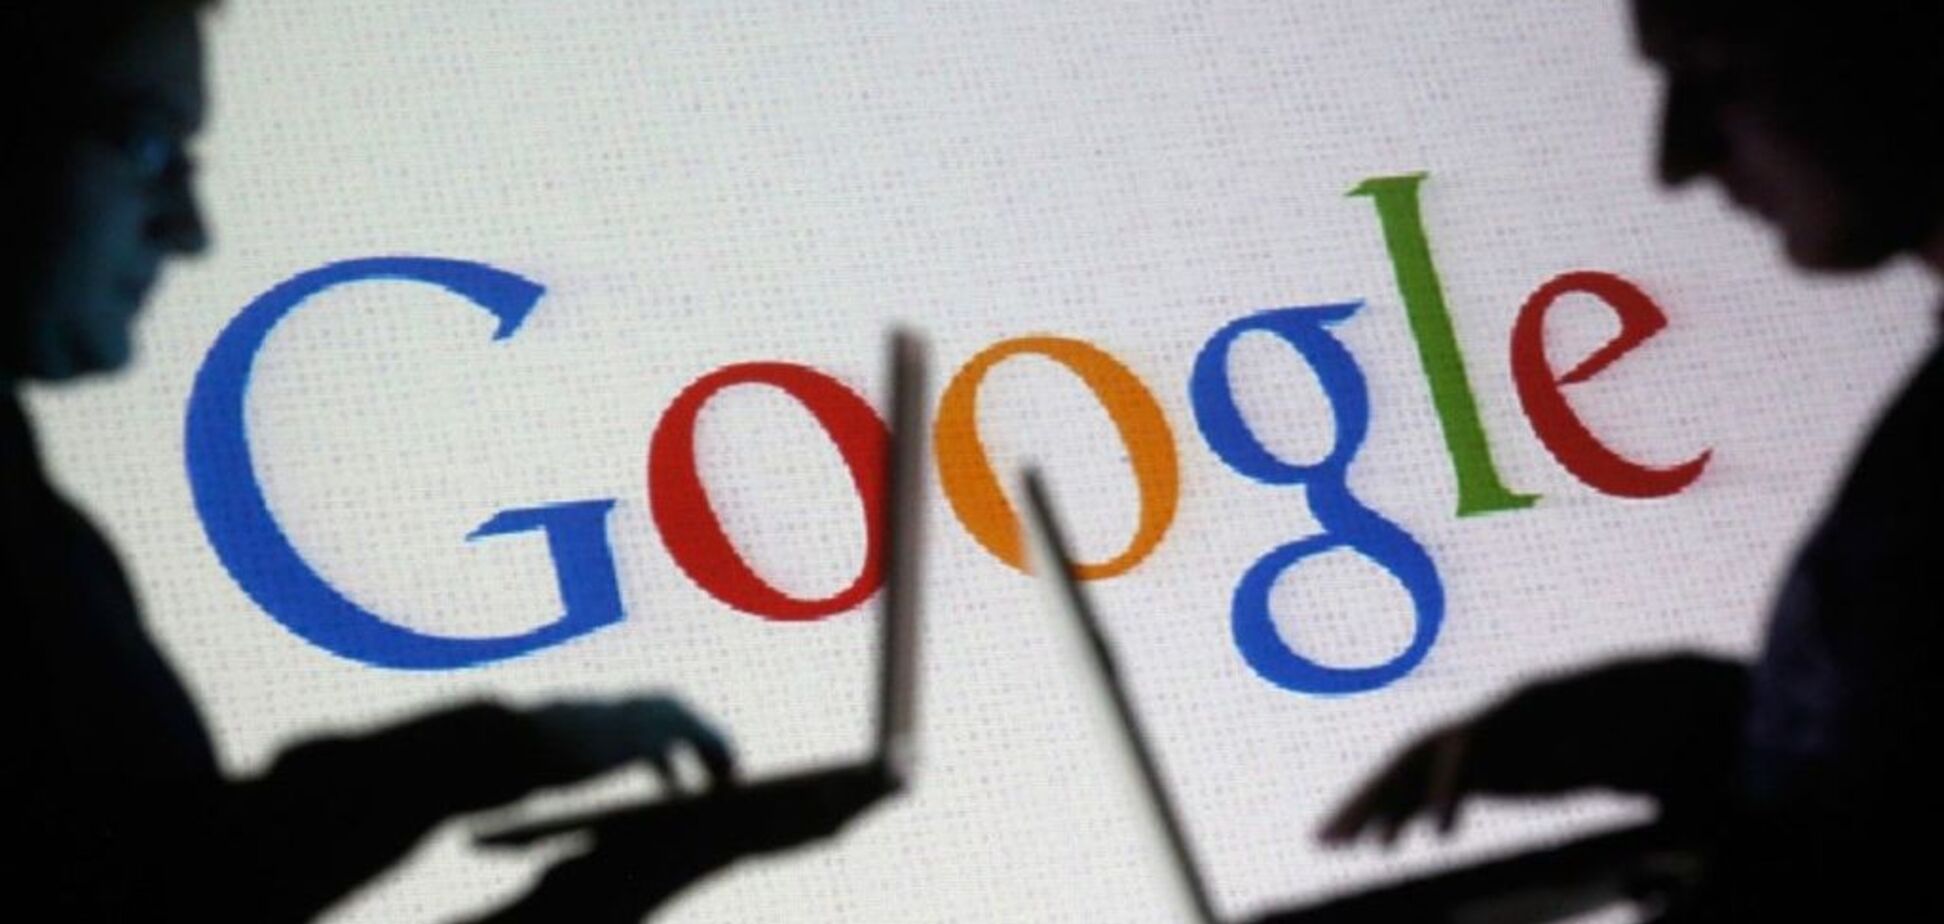 Більше 50 млн постраждалих: Google заявив про масштабний витік даних